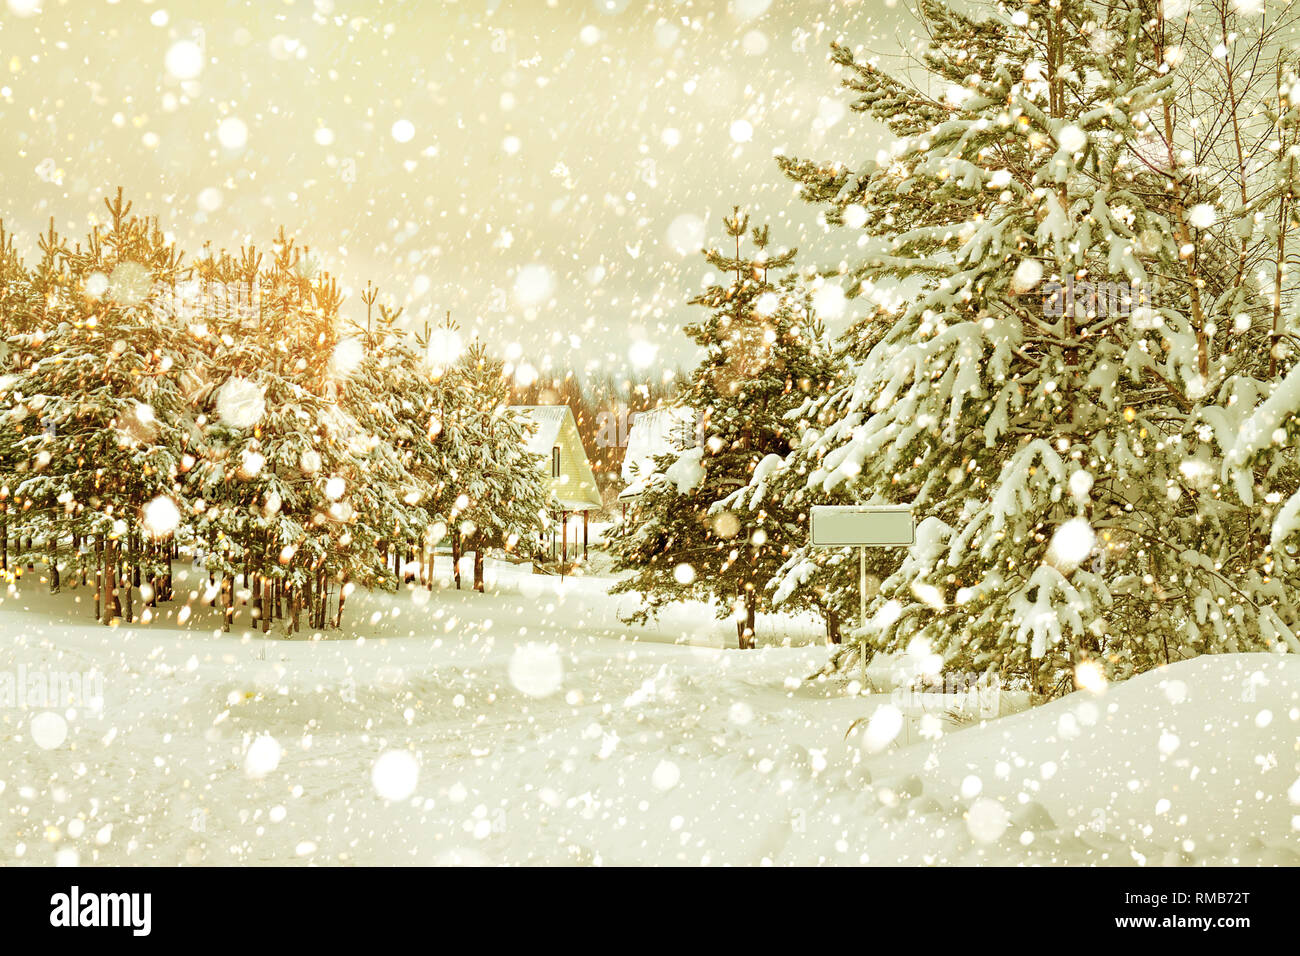 Schönen Winter Landschaft mit Wald und Dorf. retro getönten Landschaft. Weihnachten und neues Jahr Feier winter Szene Stockfoto